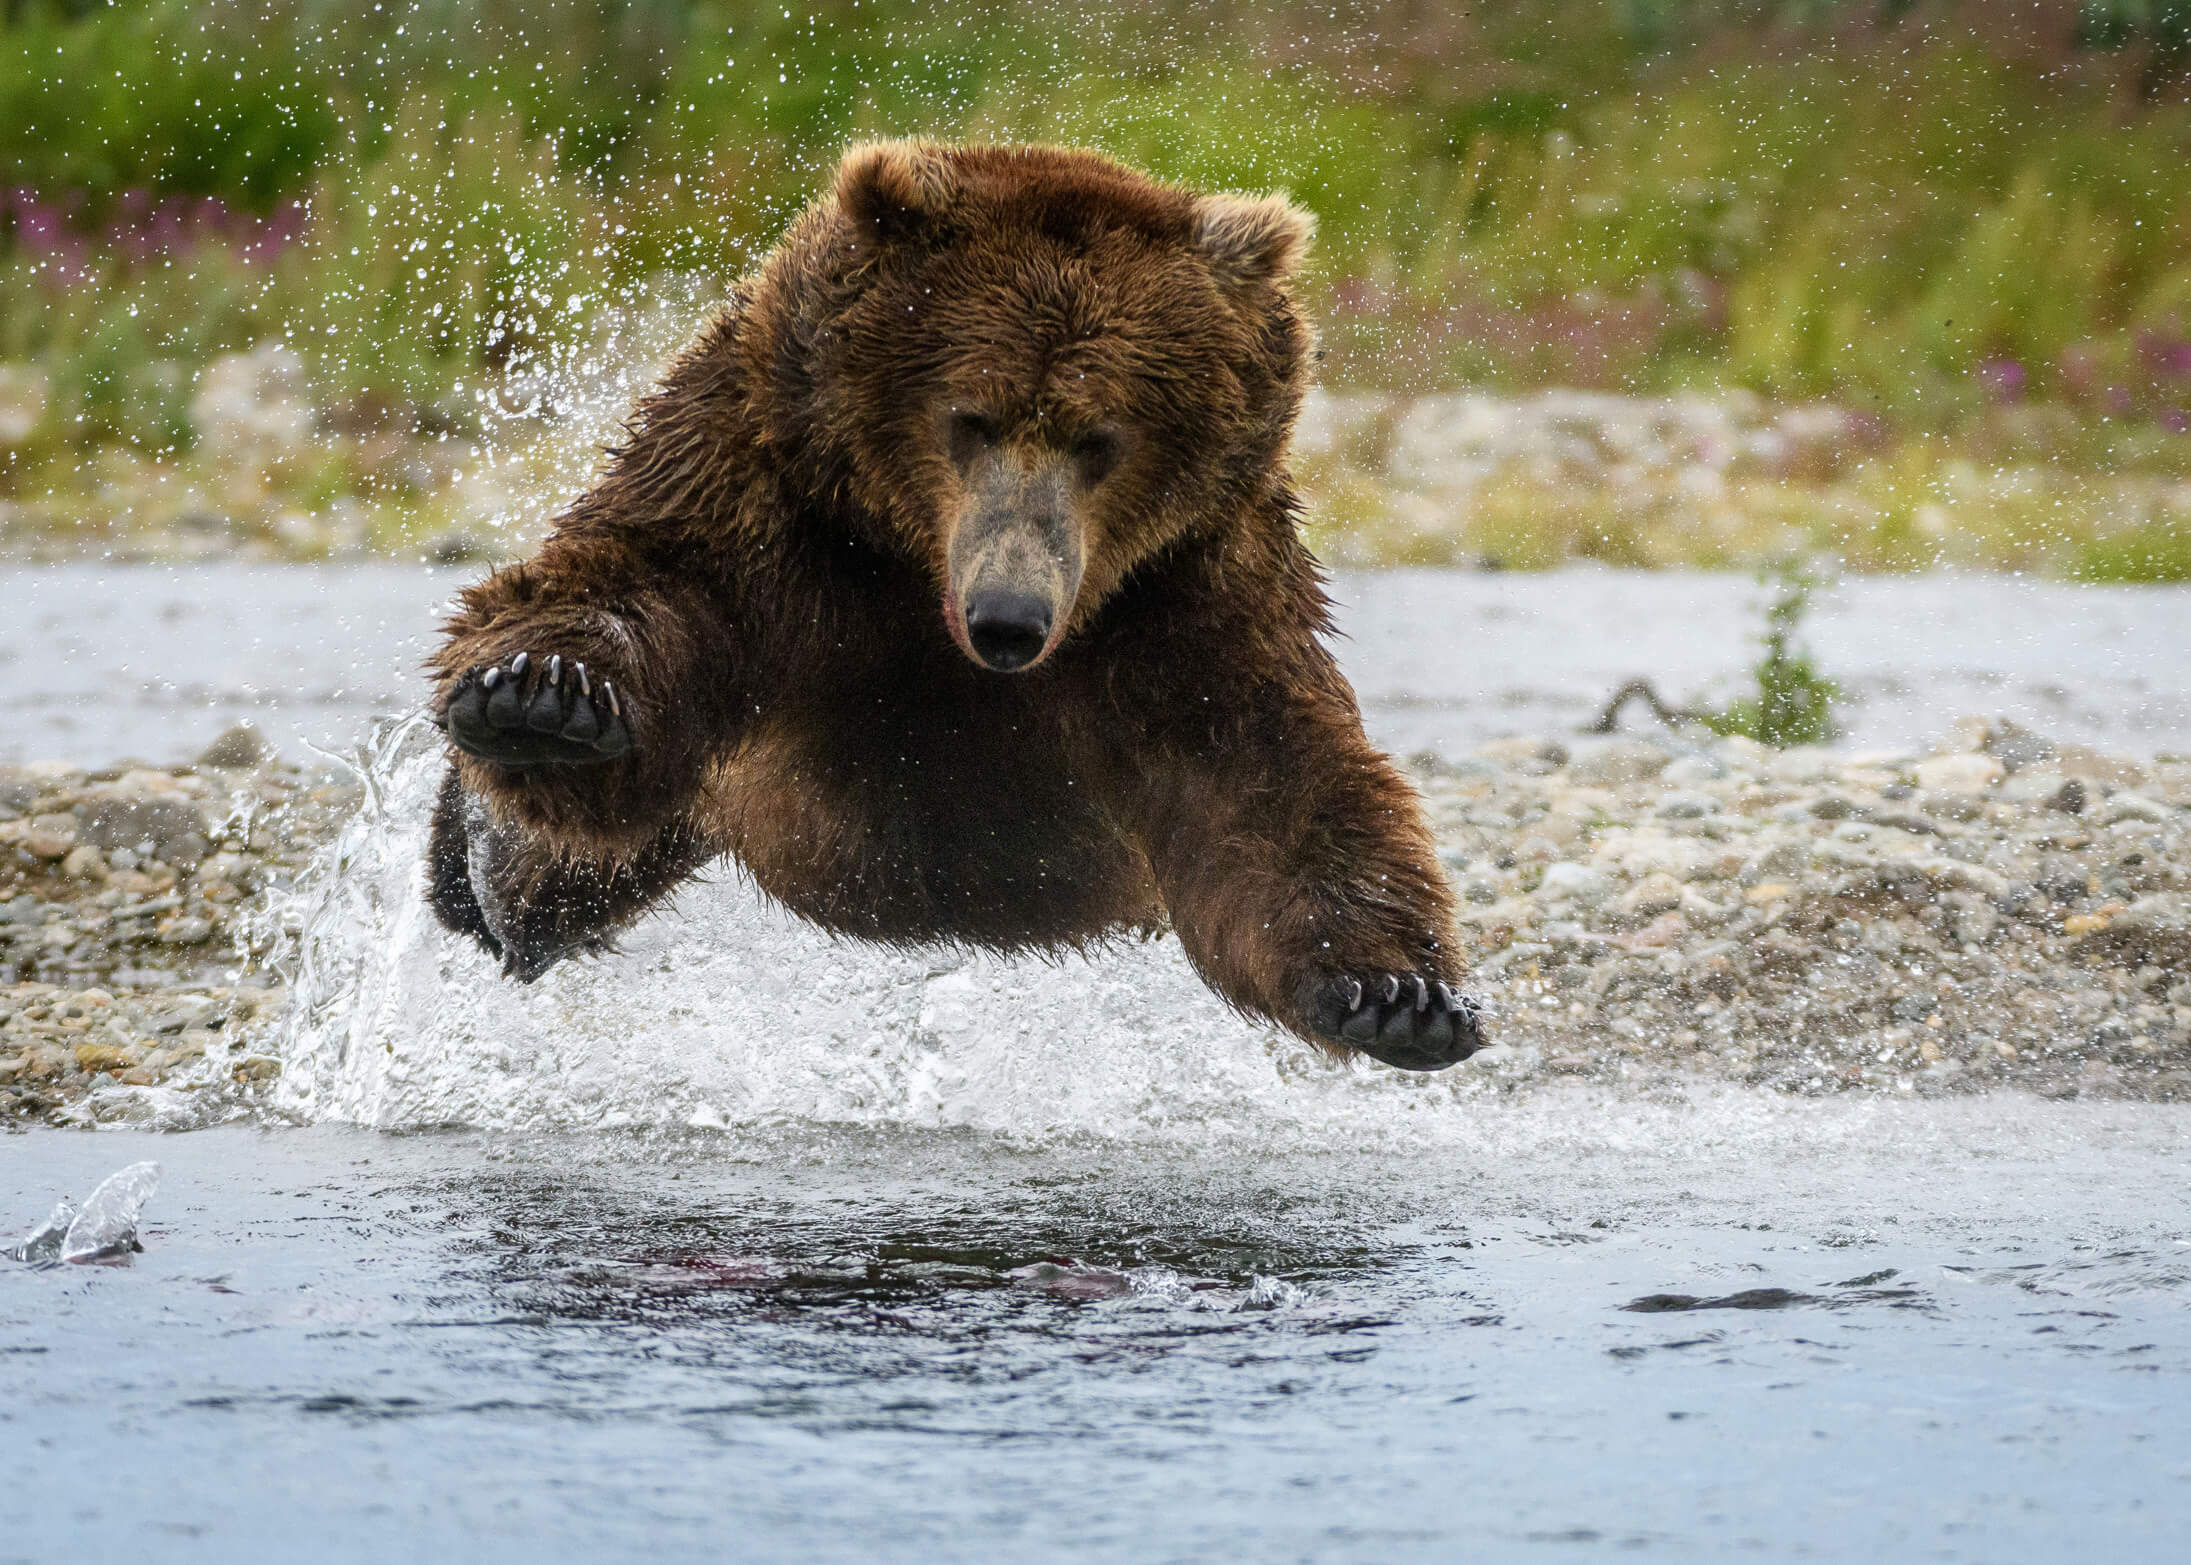 Bear splashing in water